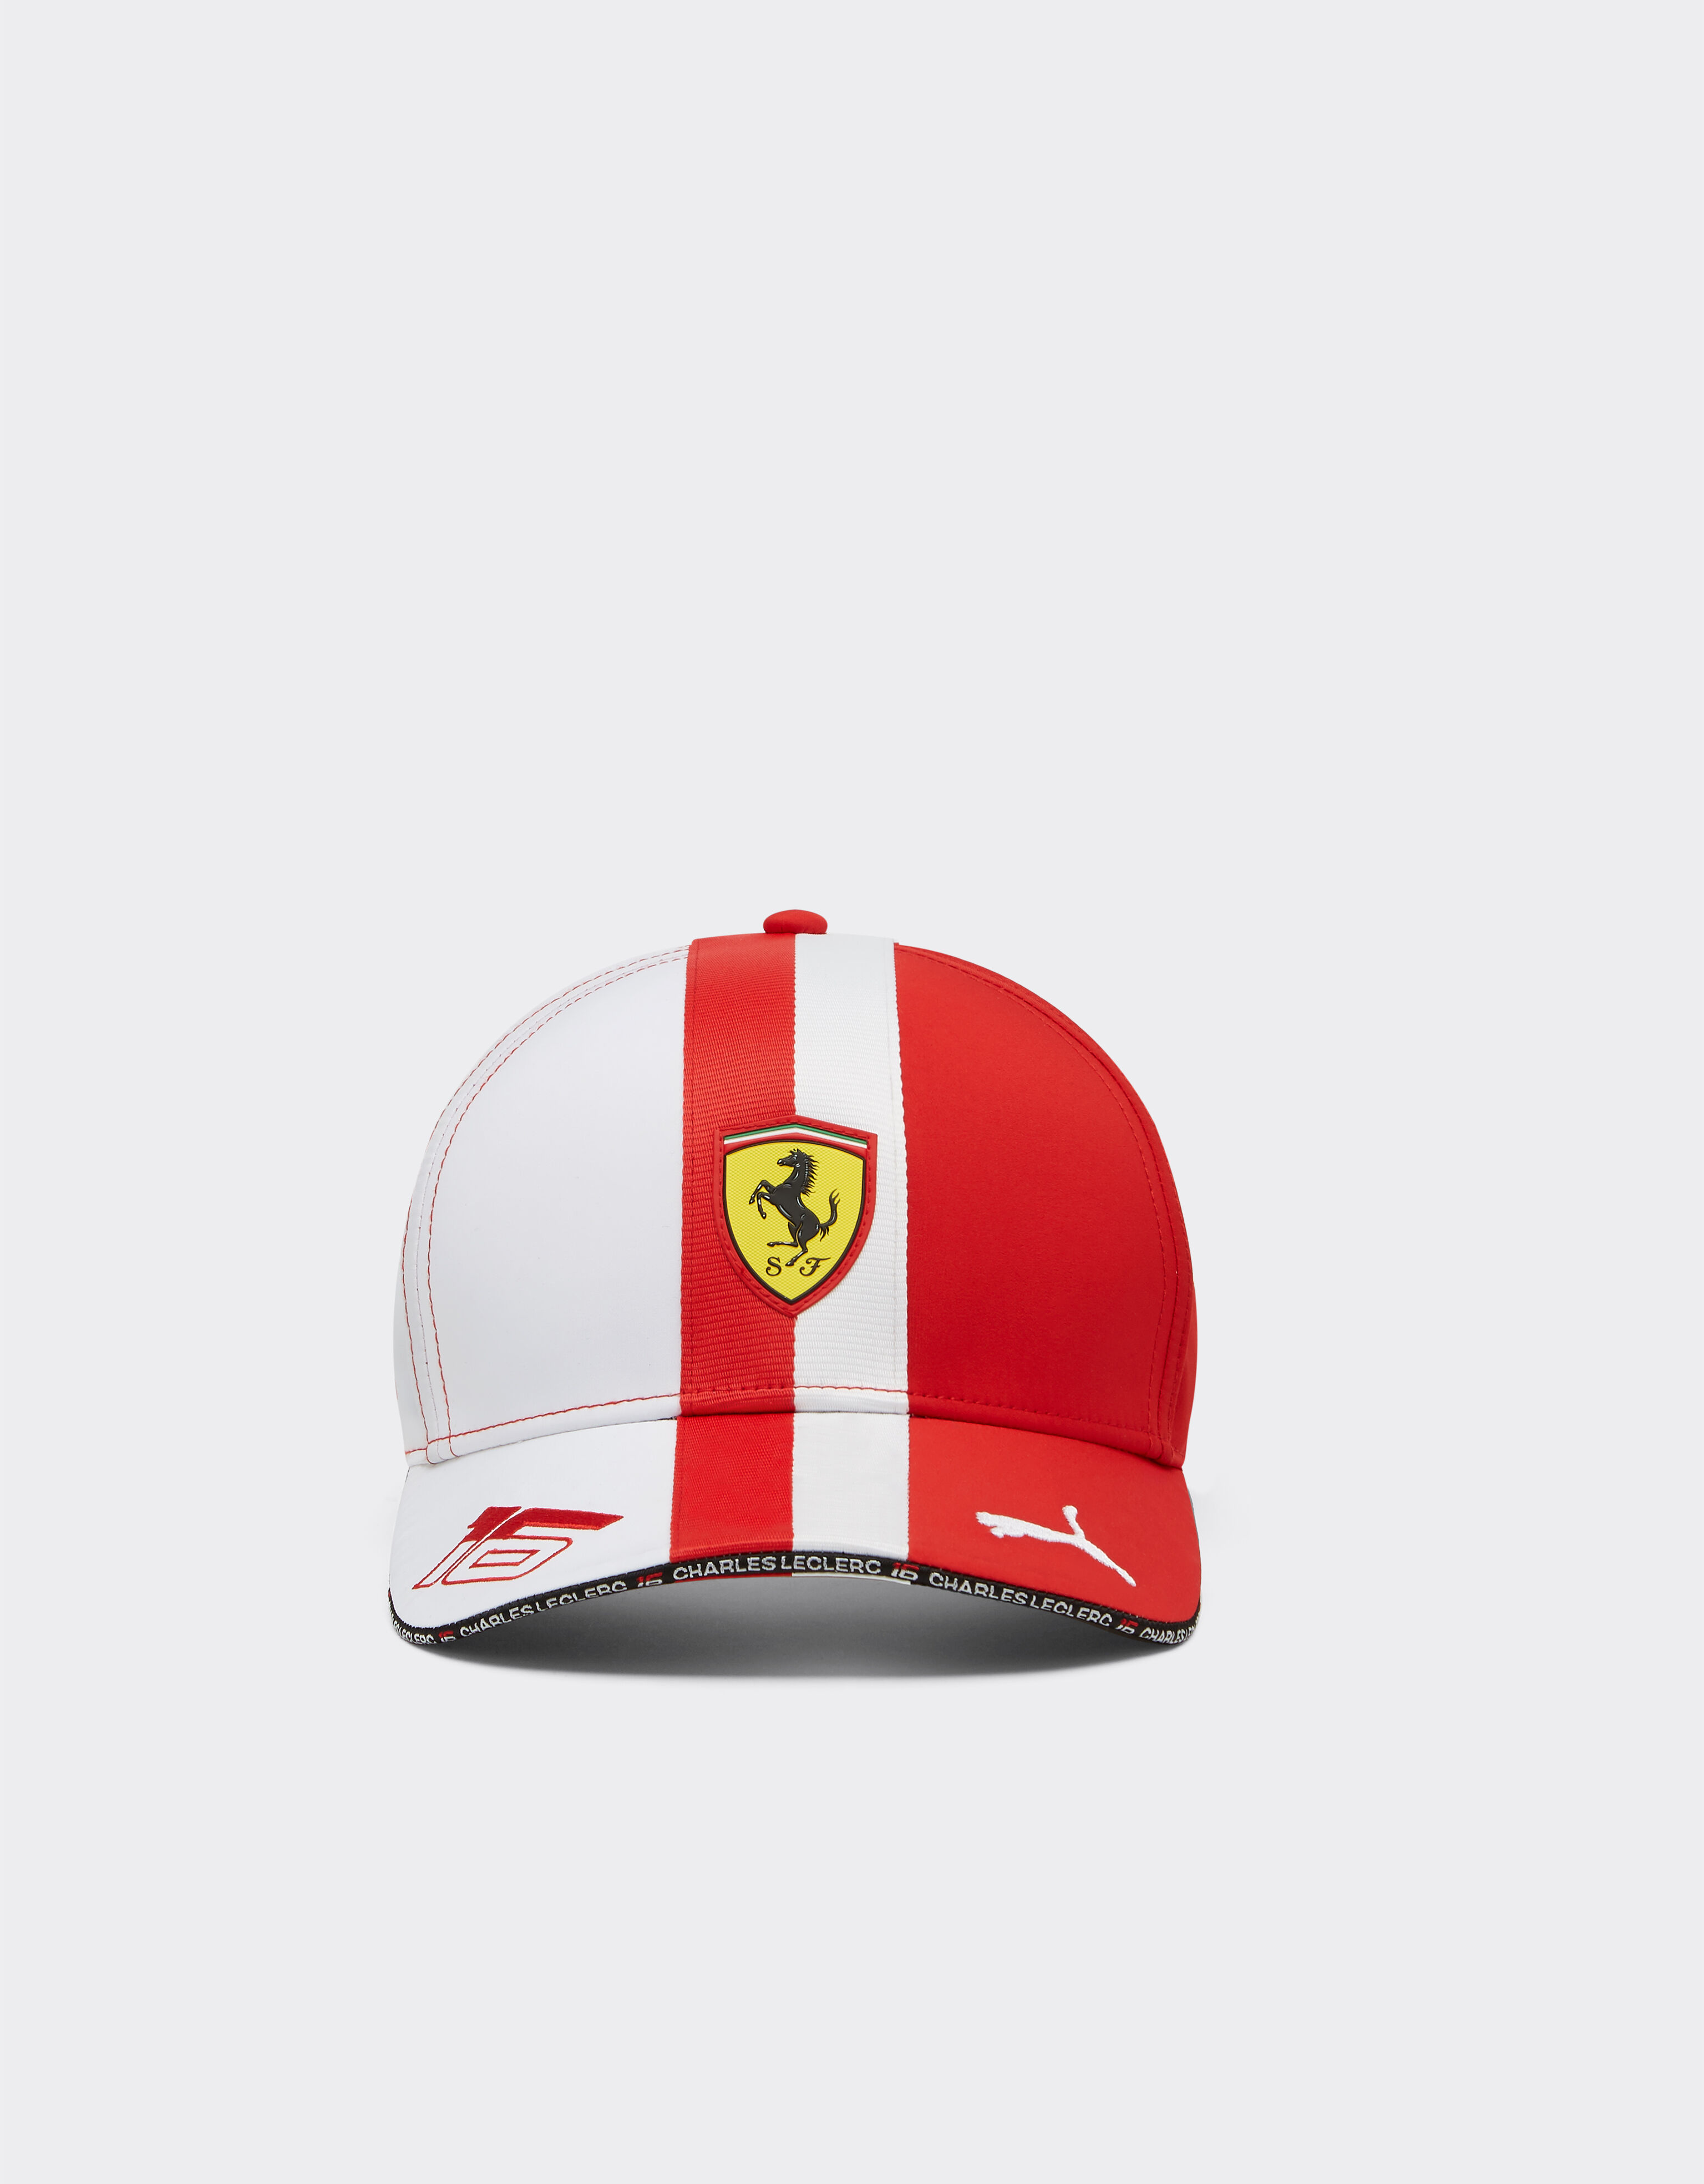 Ferrari Puma for Scuderia Ferrari Leclerc hat - Monaco Special Edition Rosso Corsa F1135f